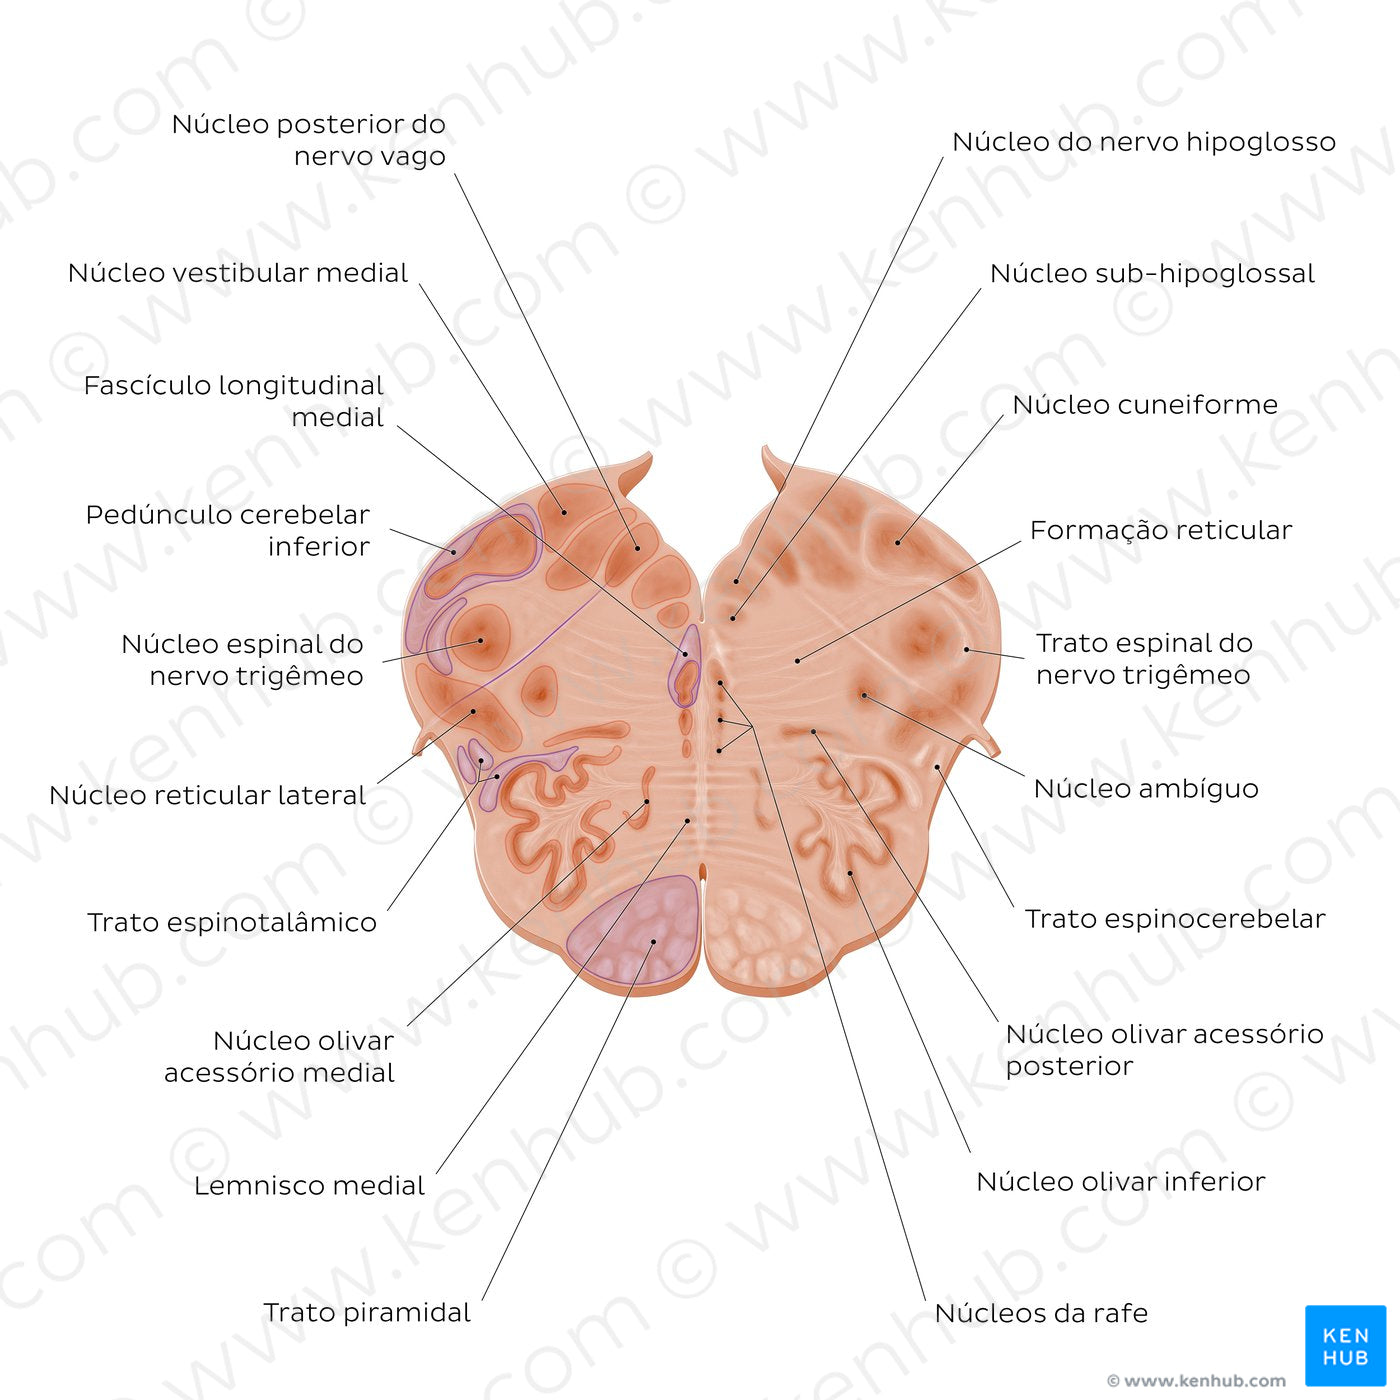 Medulla oblongata: Vagus nerve level (Portuguese)